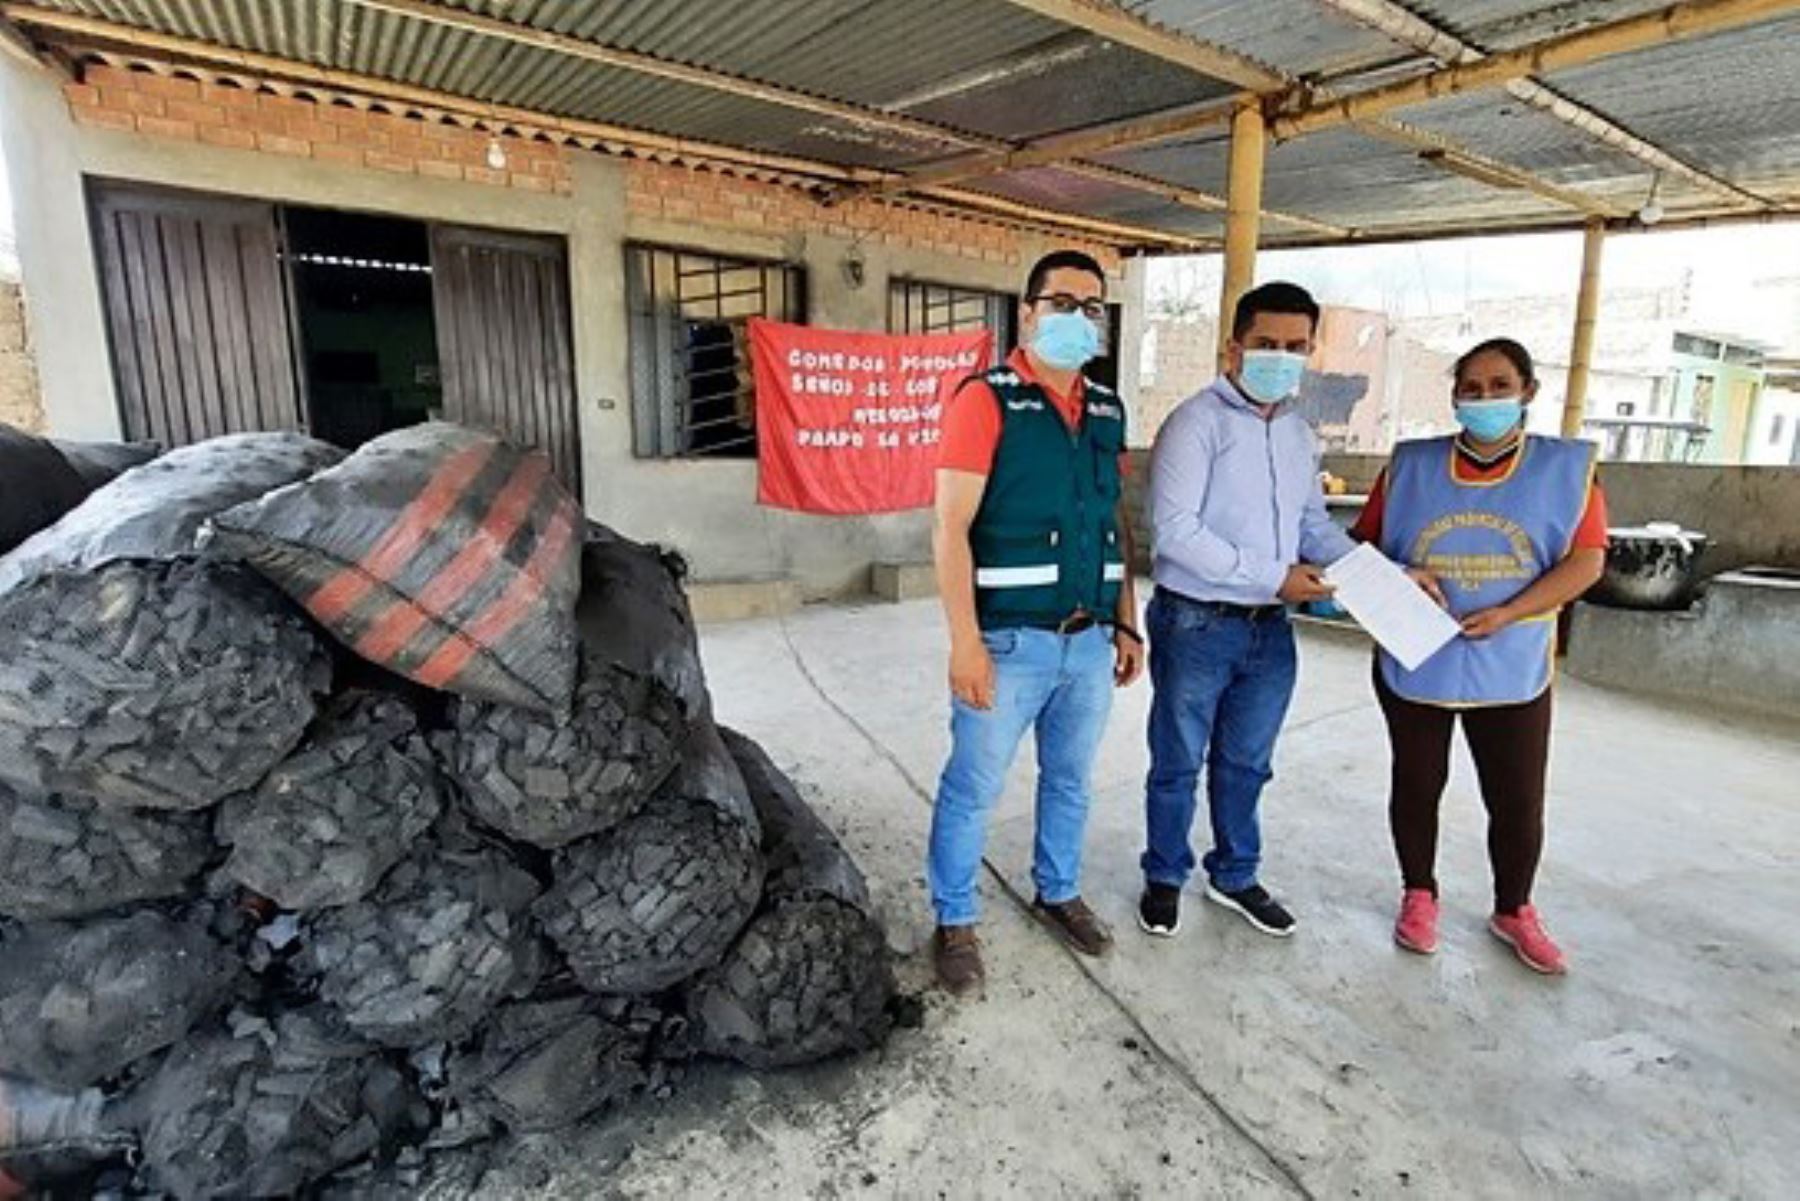 Carbón decomisado por el Serfor servirá para abastecer a comedores populares del distrito de Pátapo. Foto: ANDINA/Serfor.